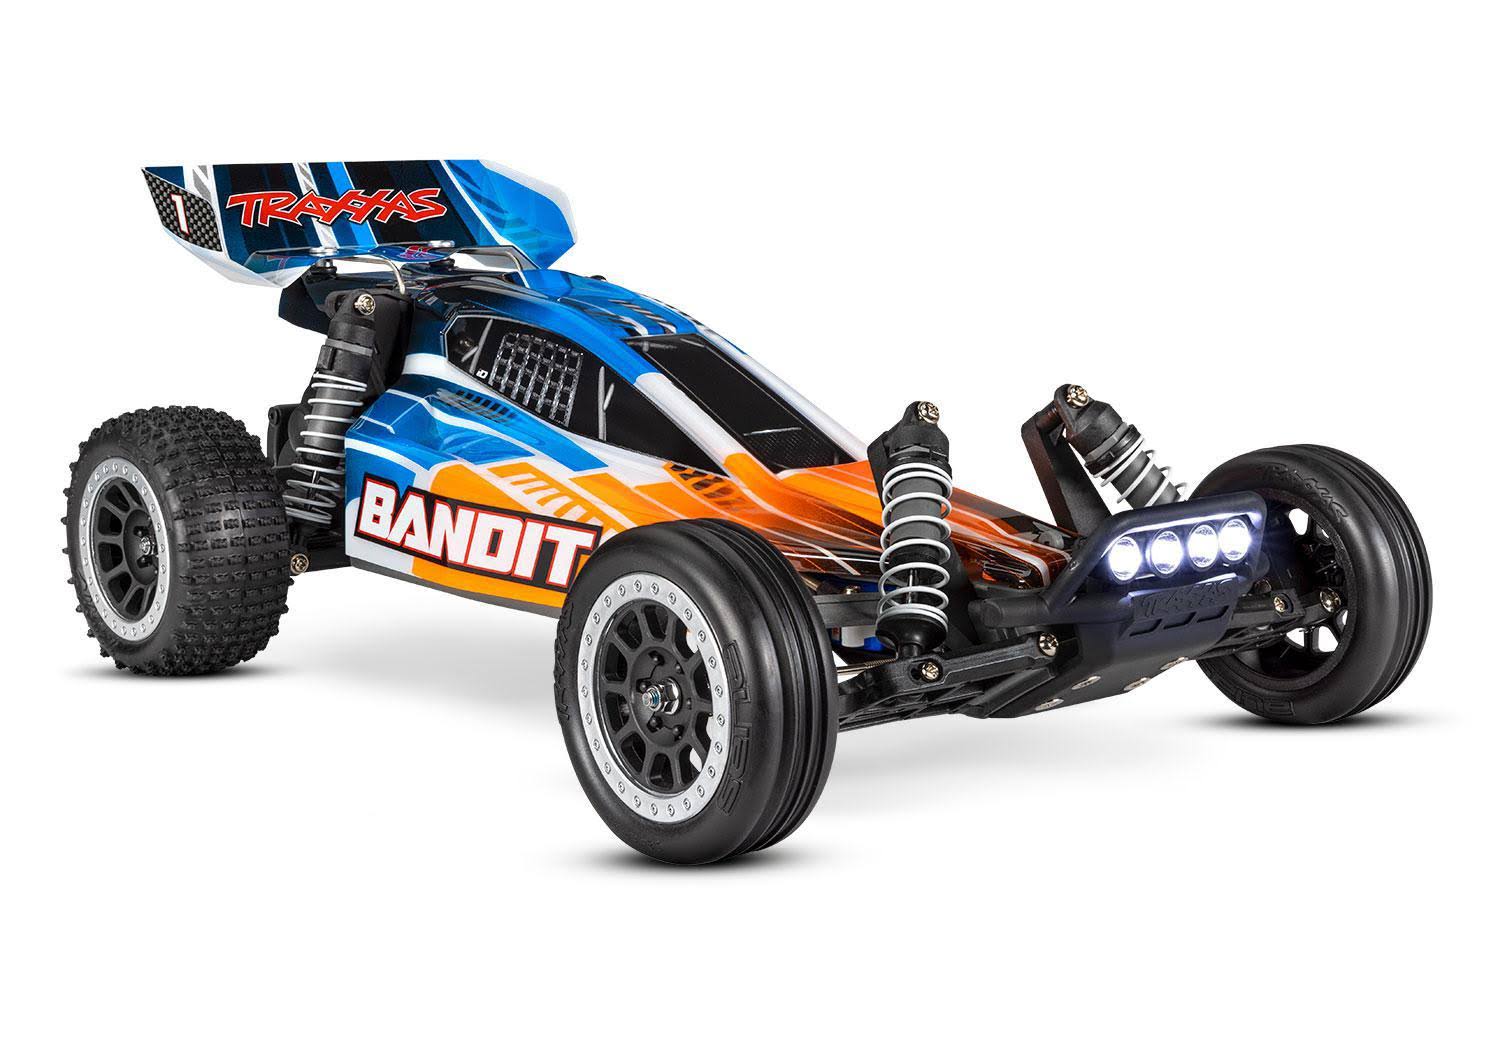 Traxxas Bandit Extreme Sports Buggy With LED Orange